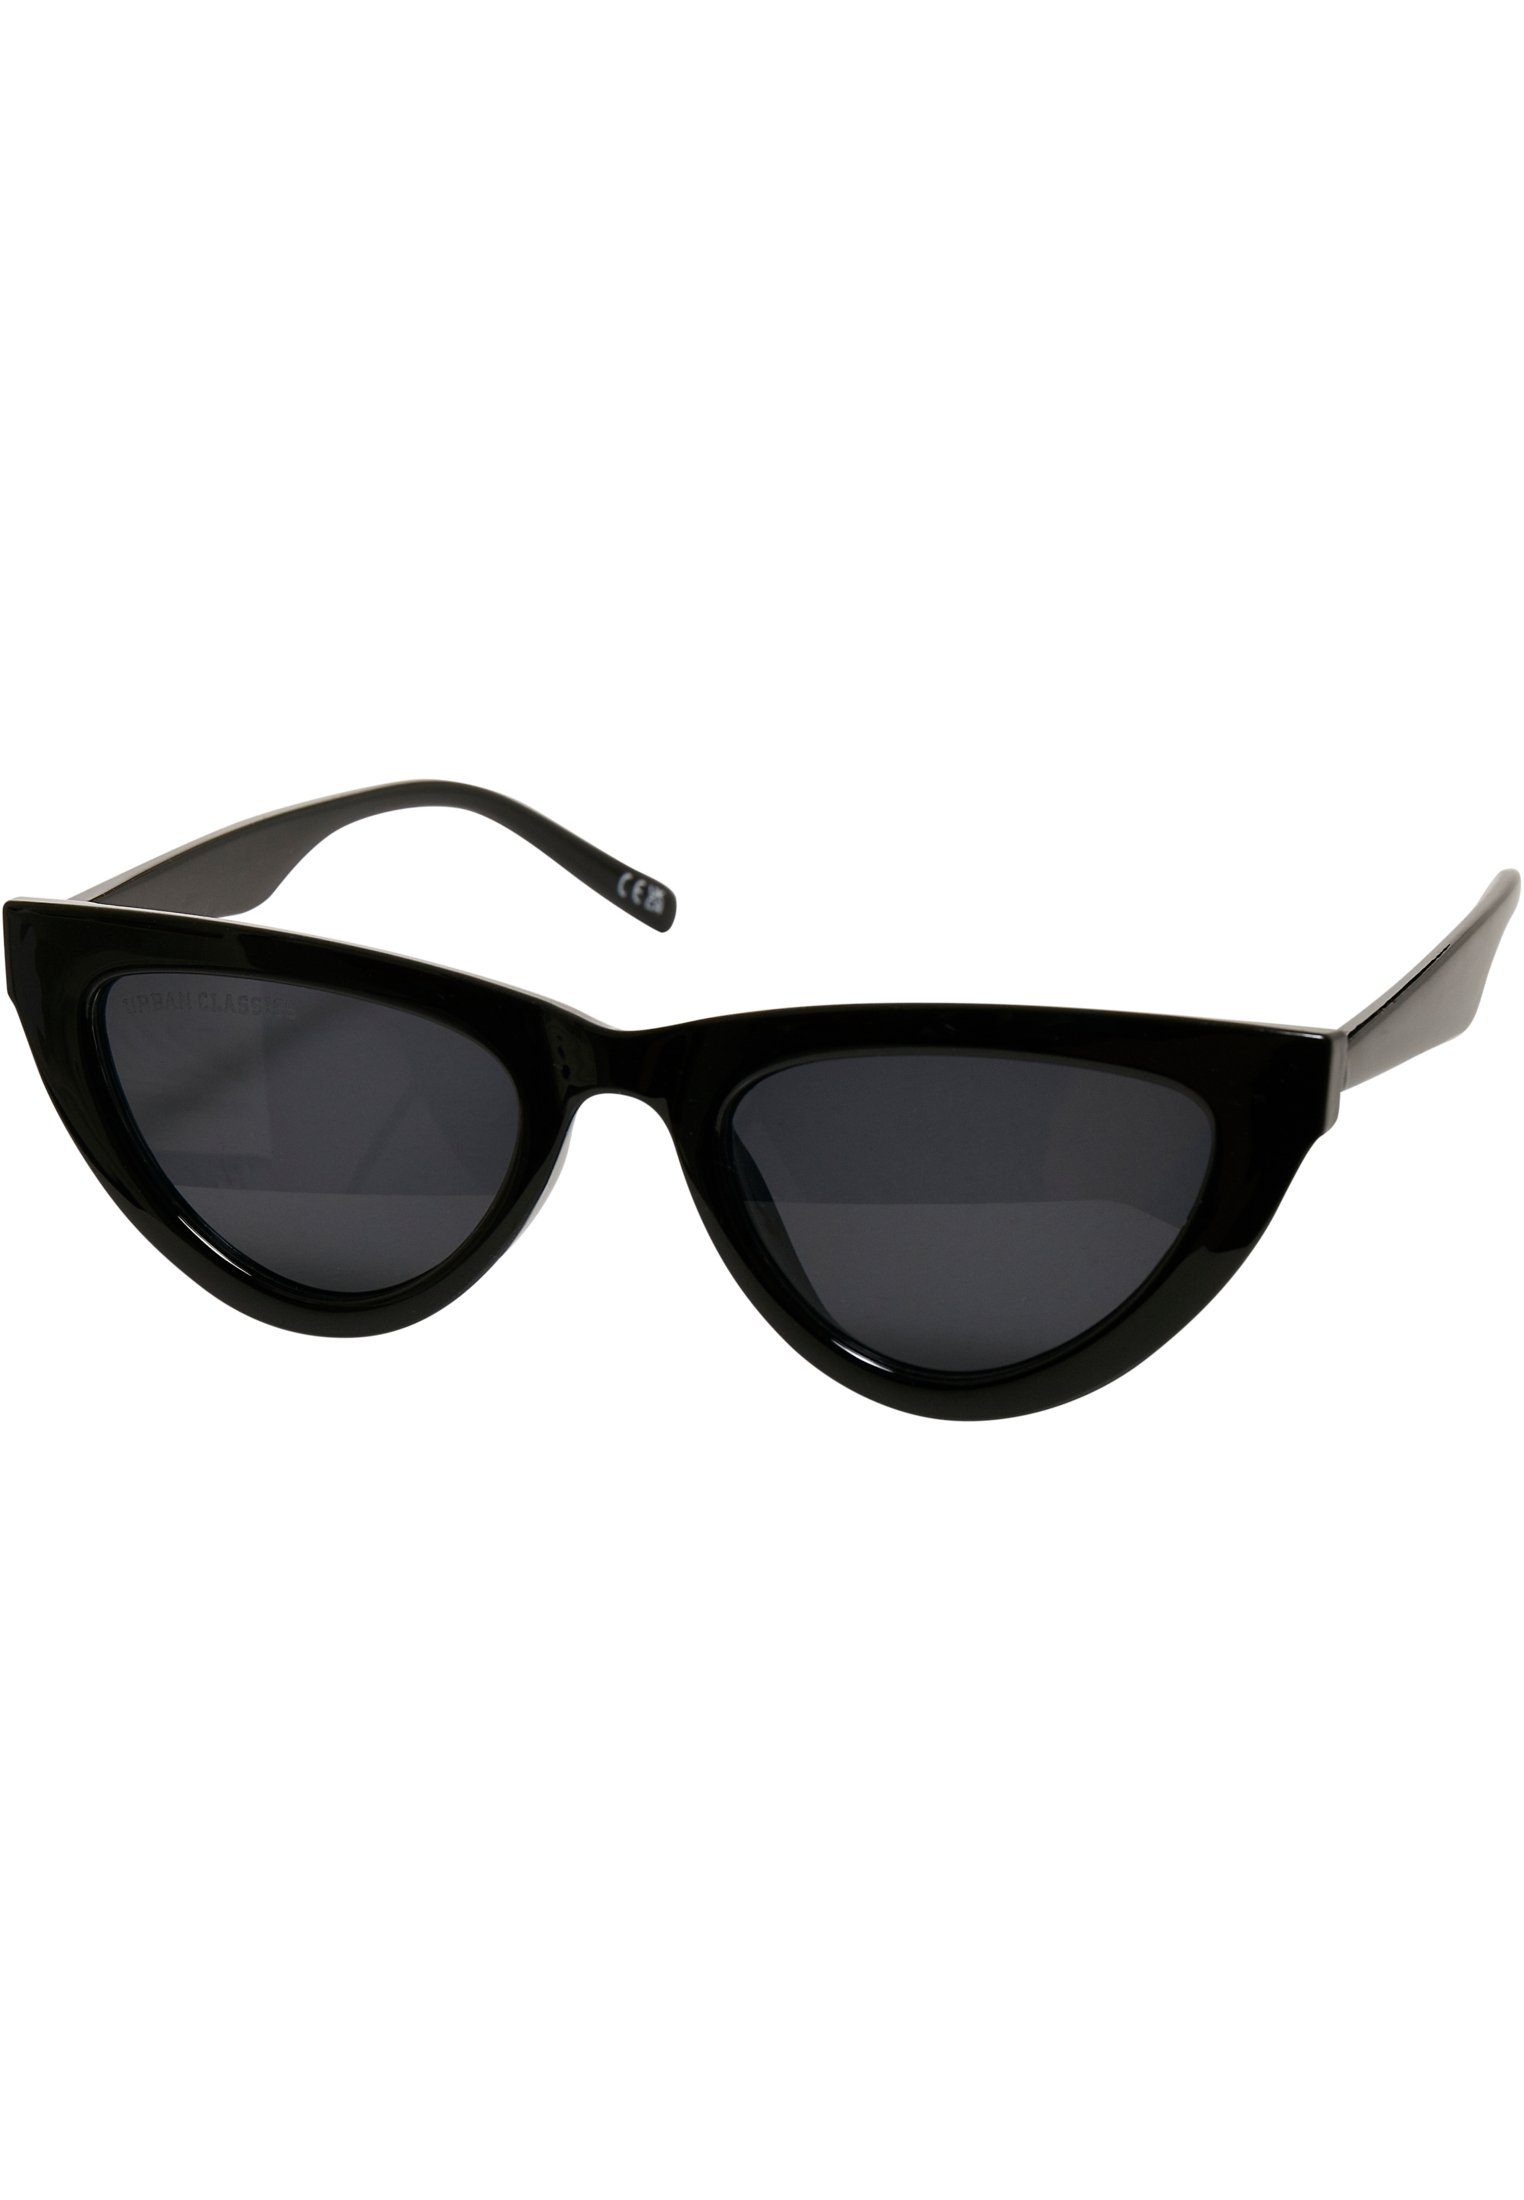 Arica CLASSICS Sunglasses URBAN Sonnenbrille Unisex